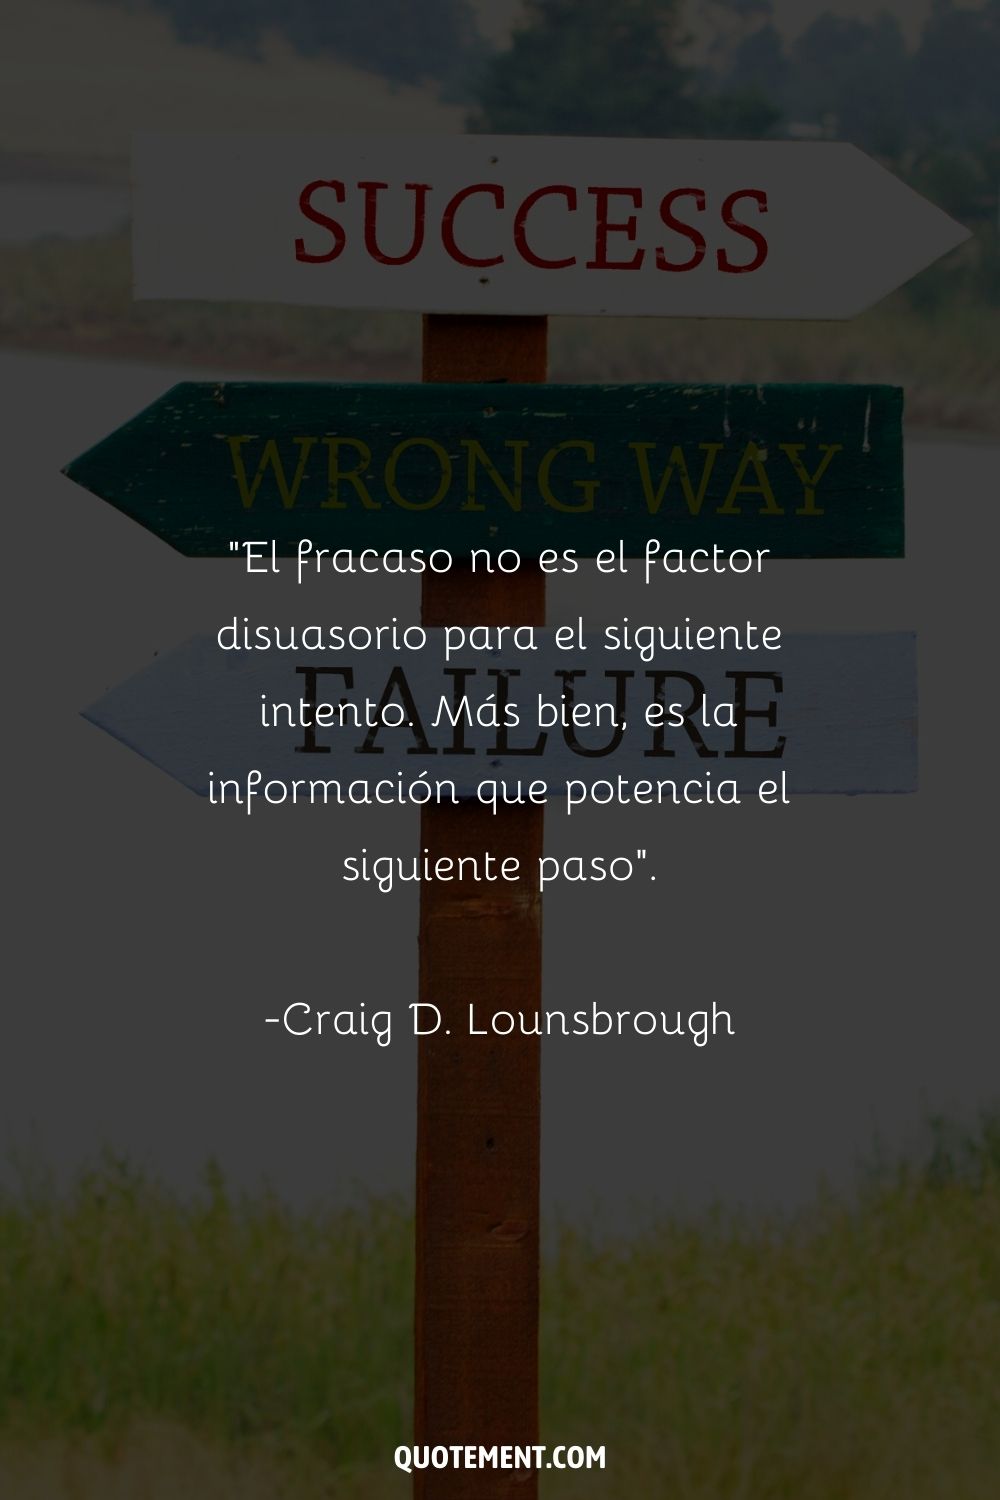 "El fracaso no es el factor disuasorio para el siguiente intento. Más bien, es la información que potencia el siguiente paso". - Craig D. Lounsbrough